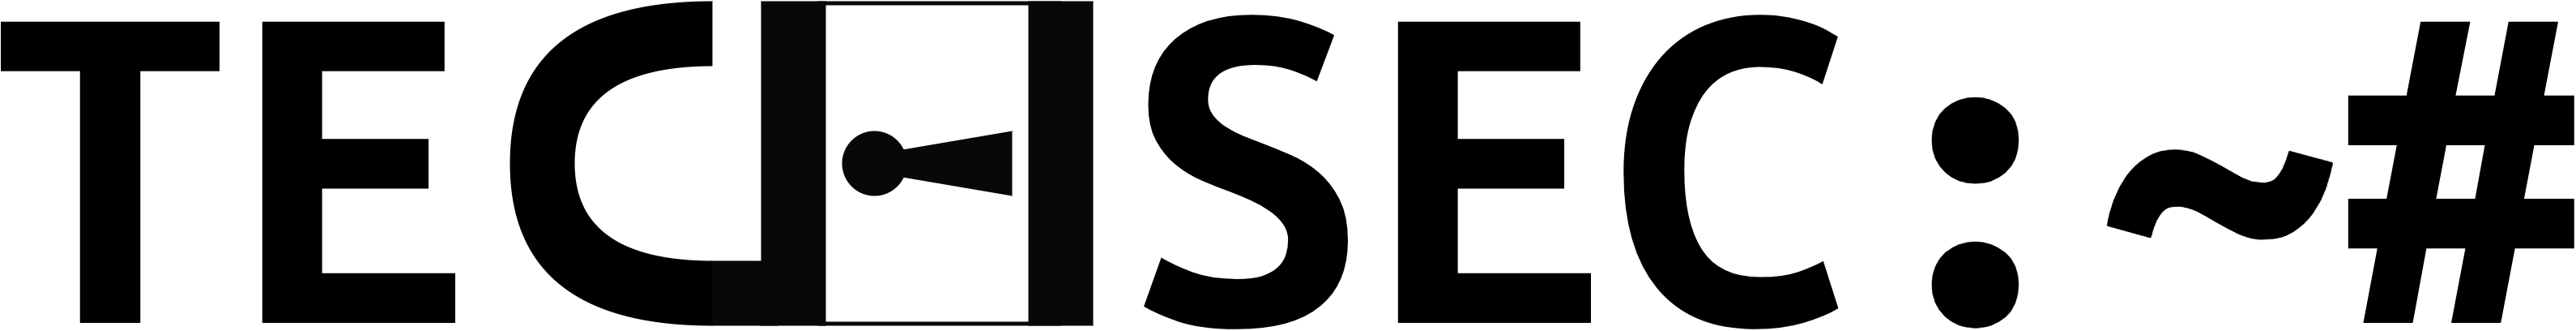 techsec name logo